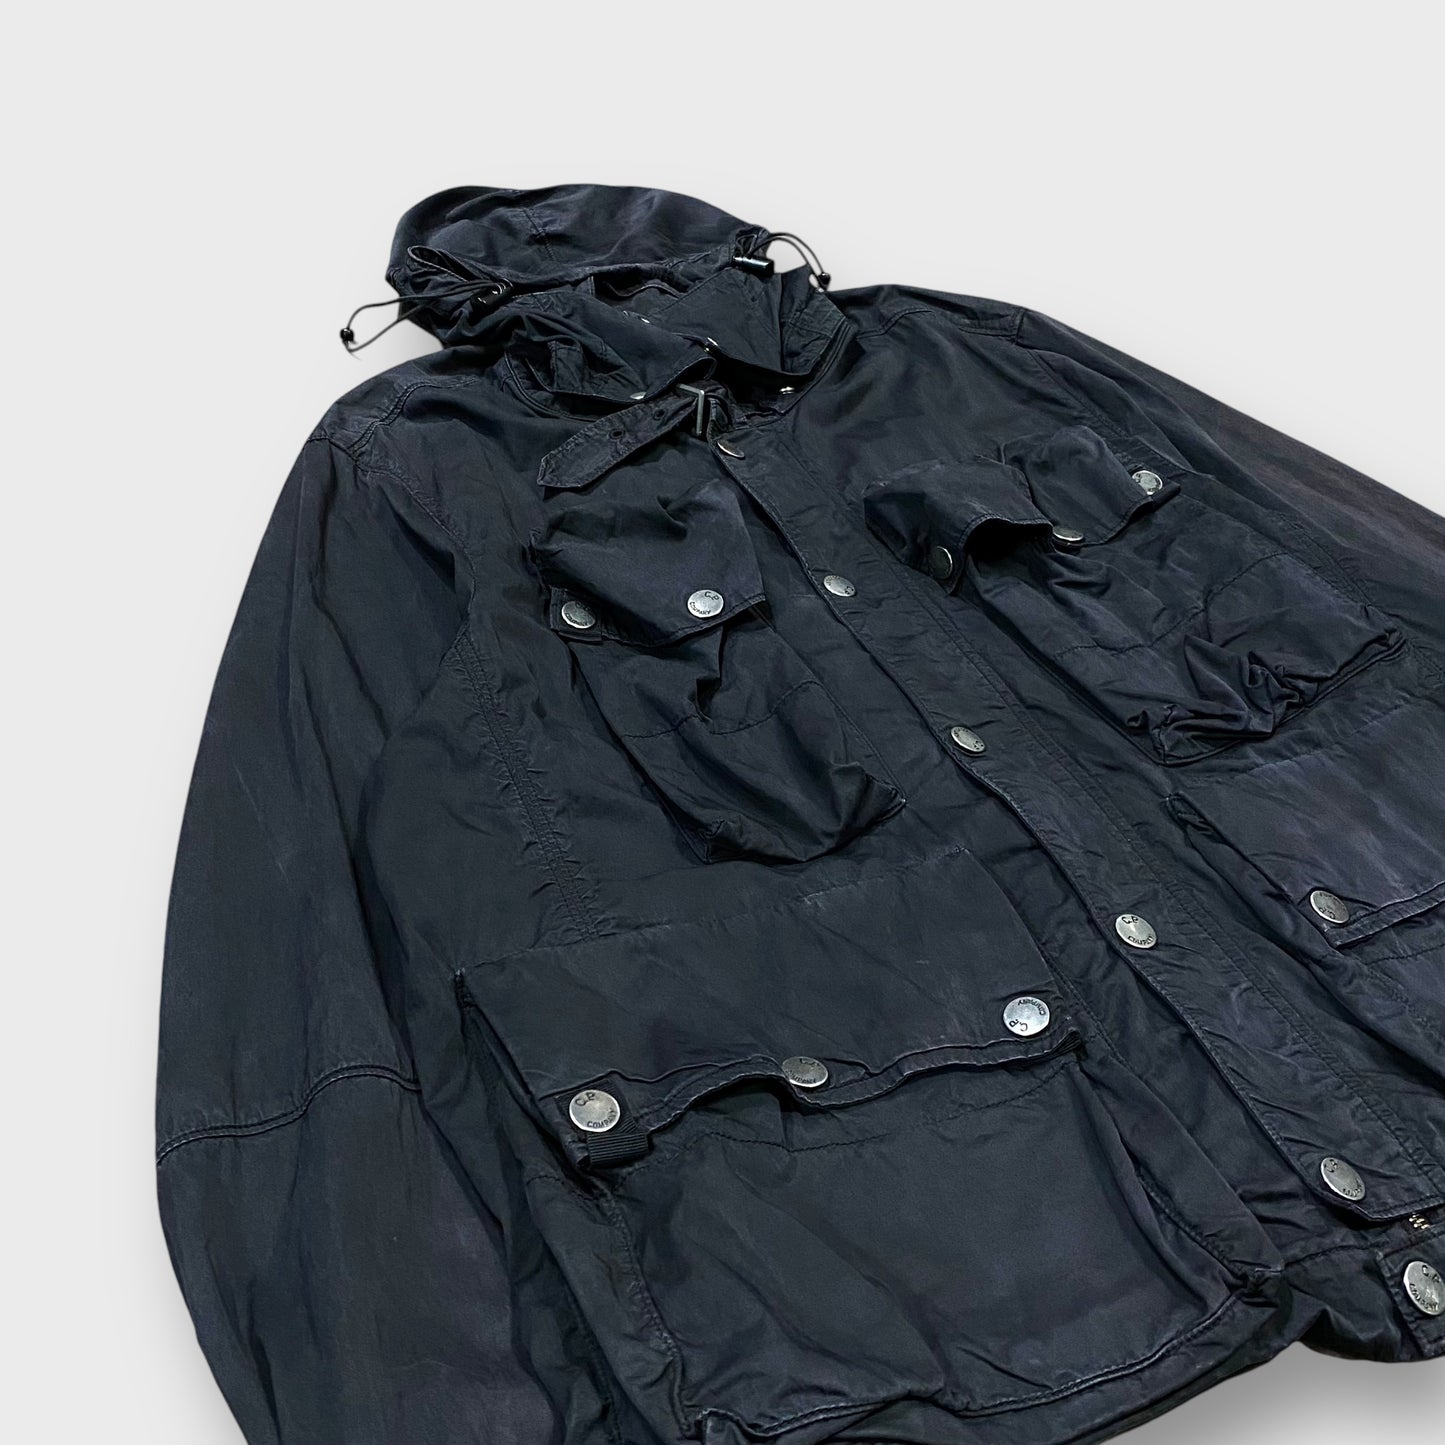 00's "C.P Company" multi pocket nylon jacket